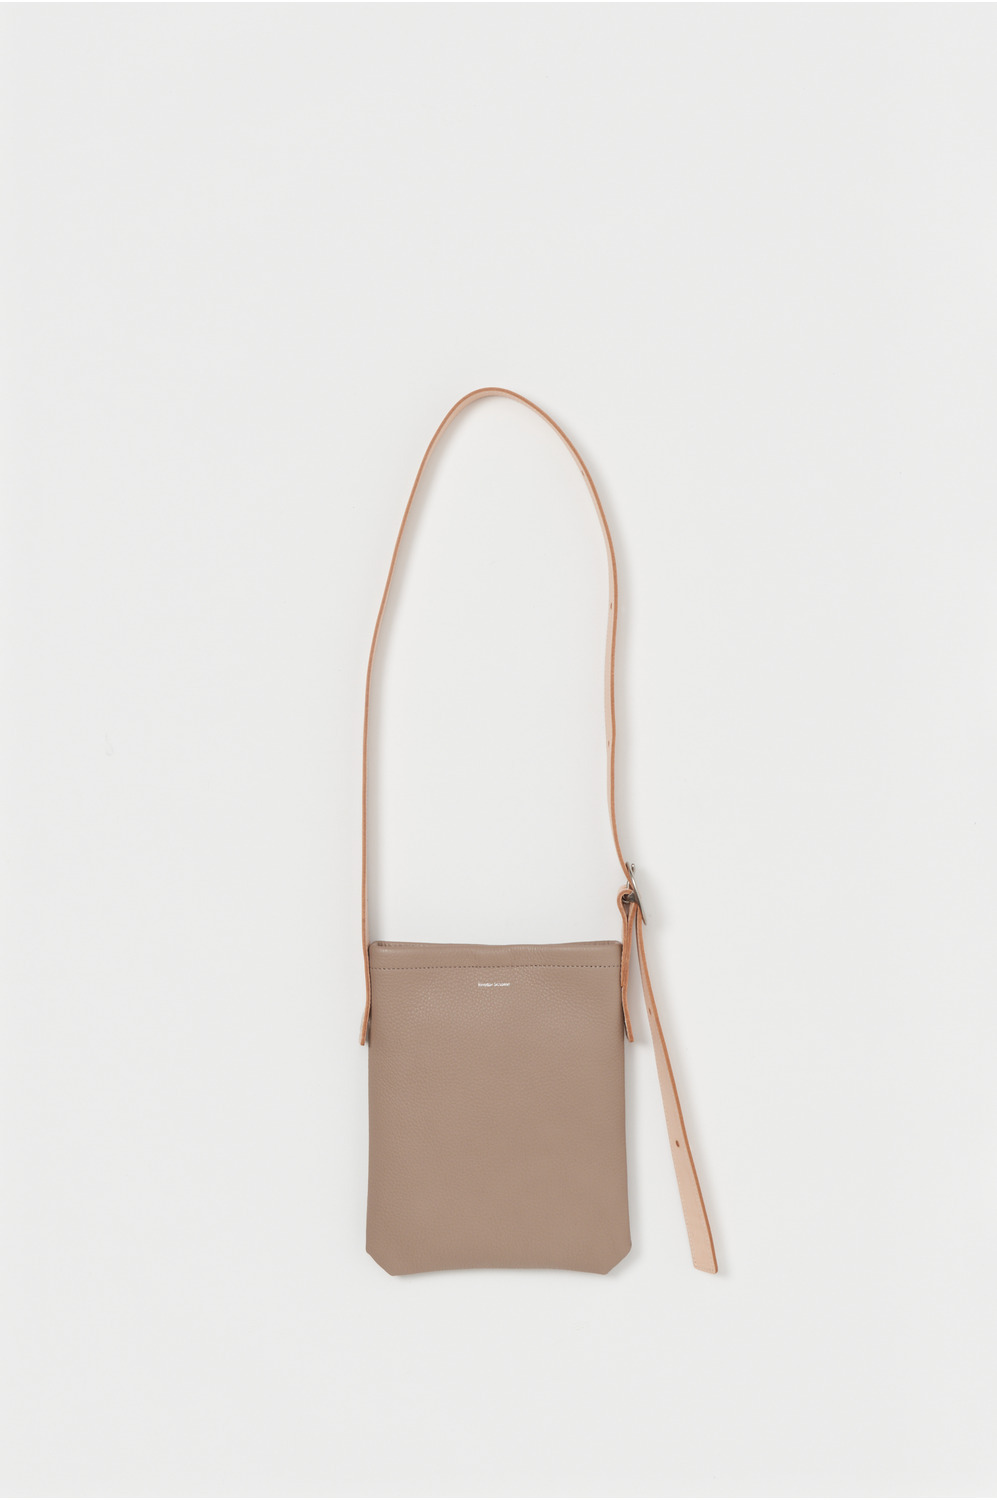 one side belt bag small 詳細画像 beige 1